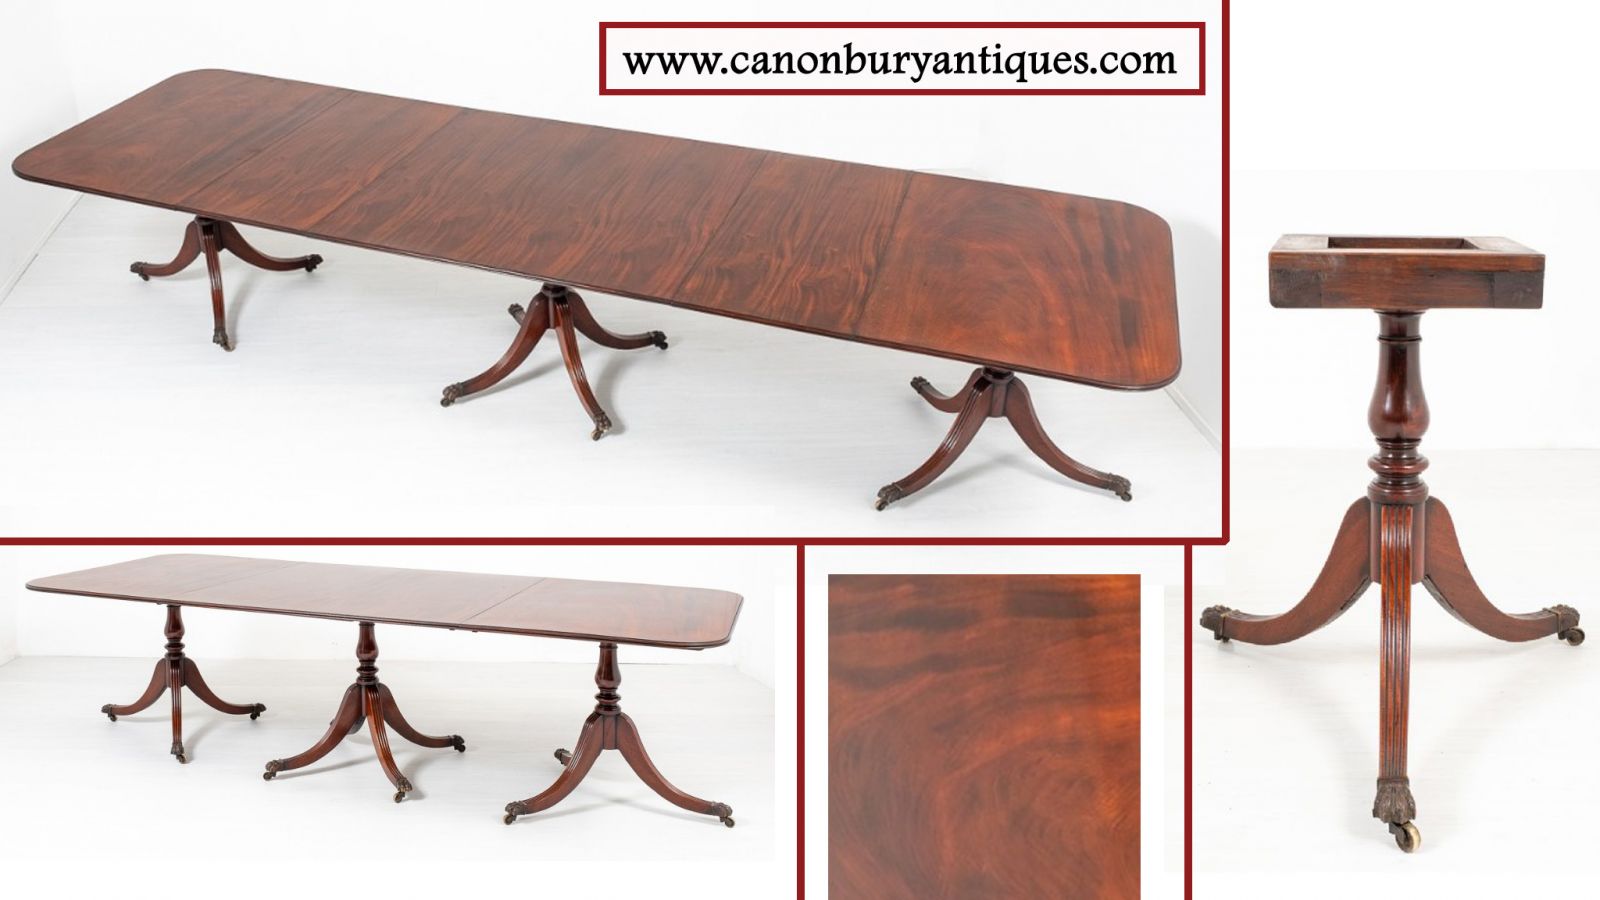 Extending Regency pedestal dining table in mahogany